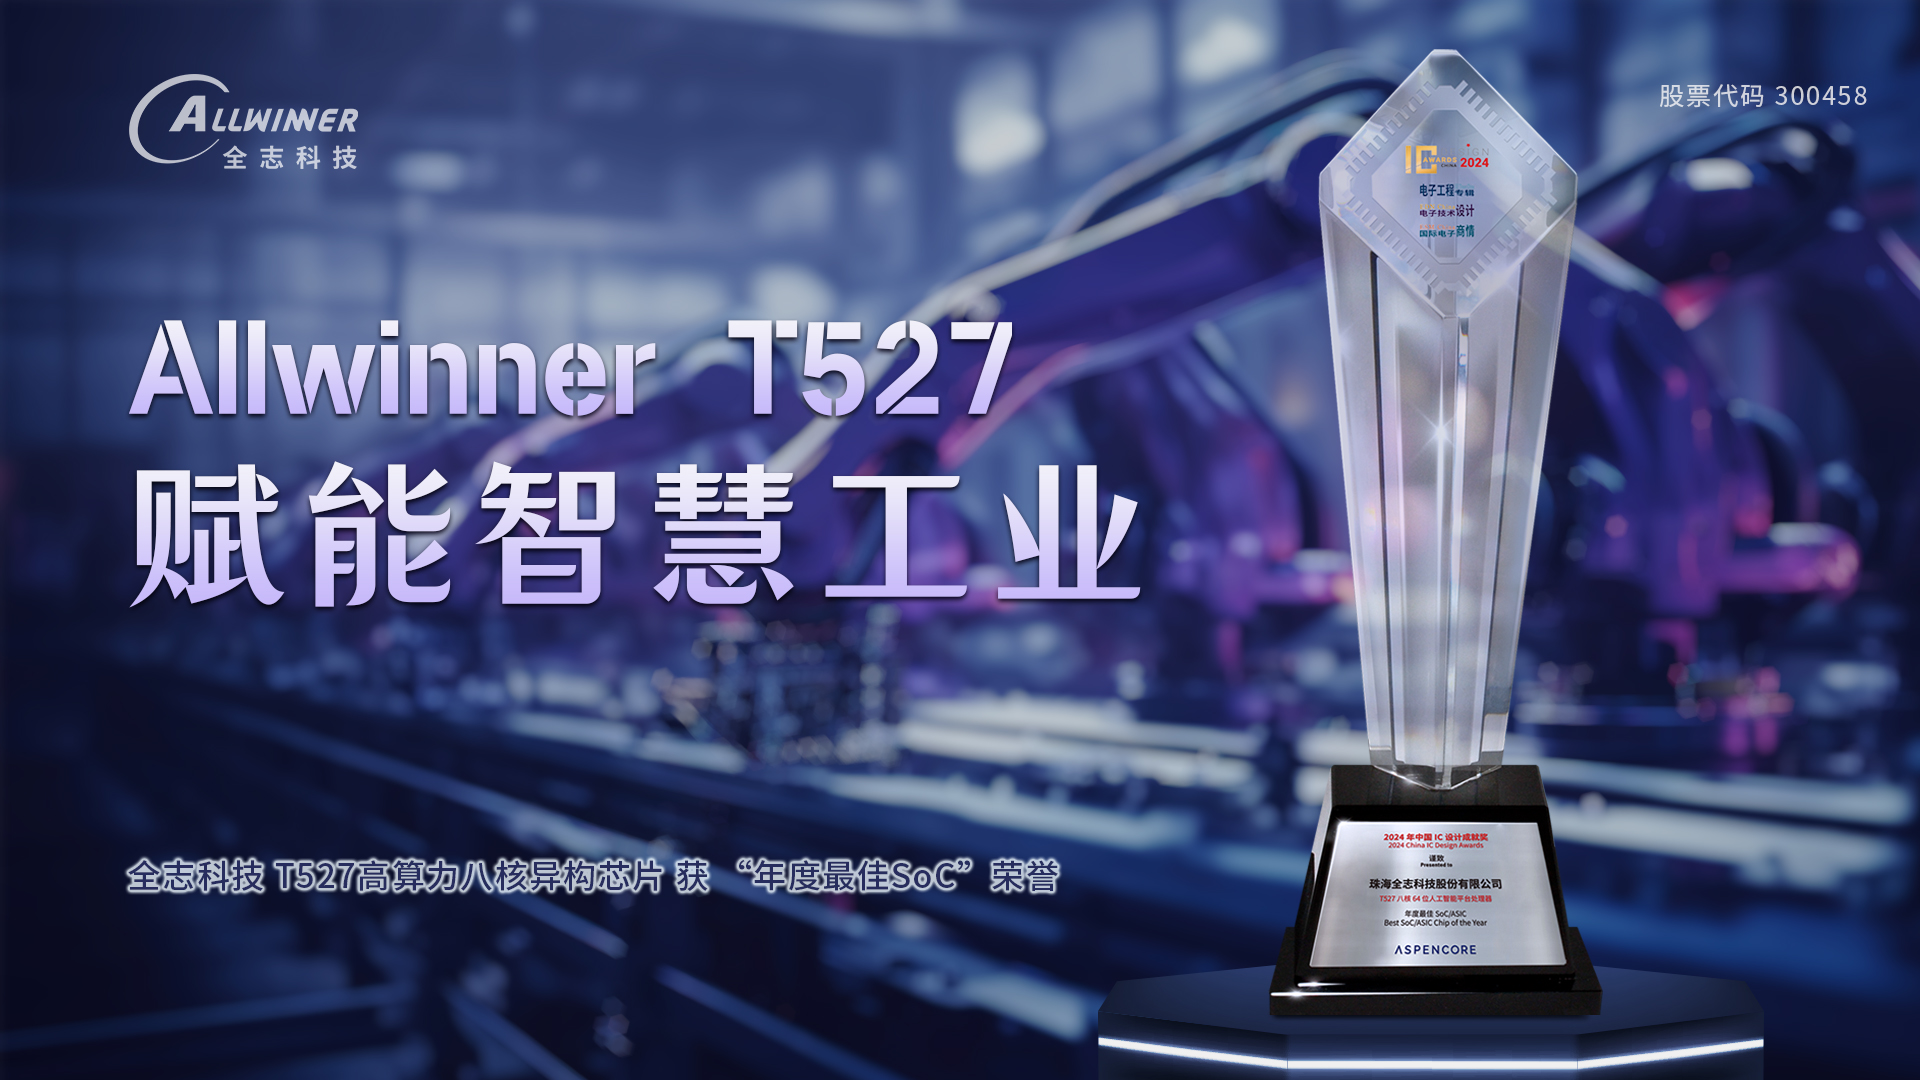 尊龙凯时科技T527 获 “年度最佳SoC” 声誉